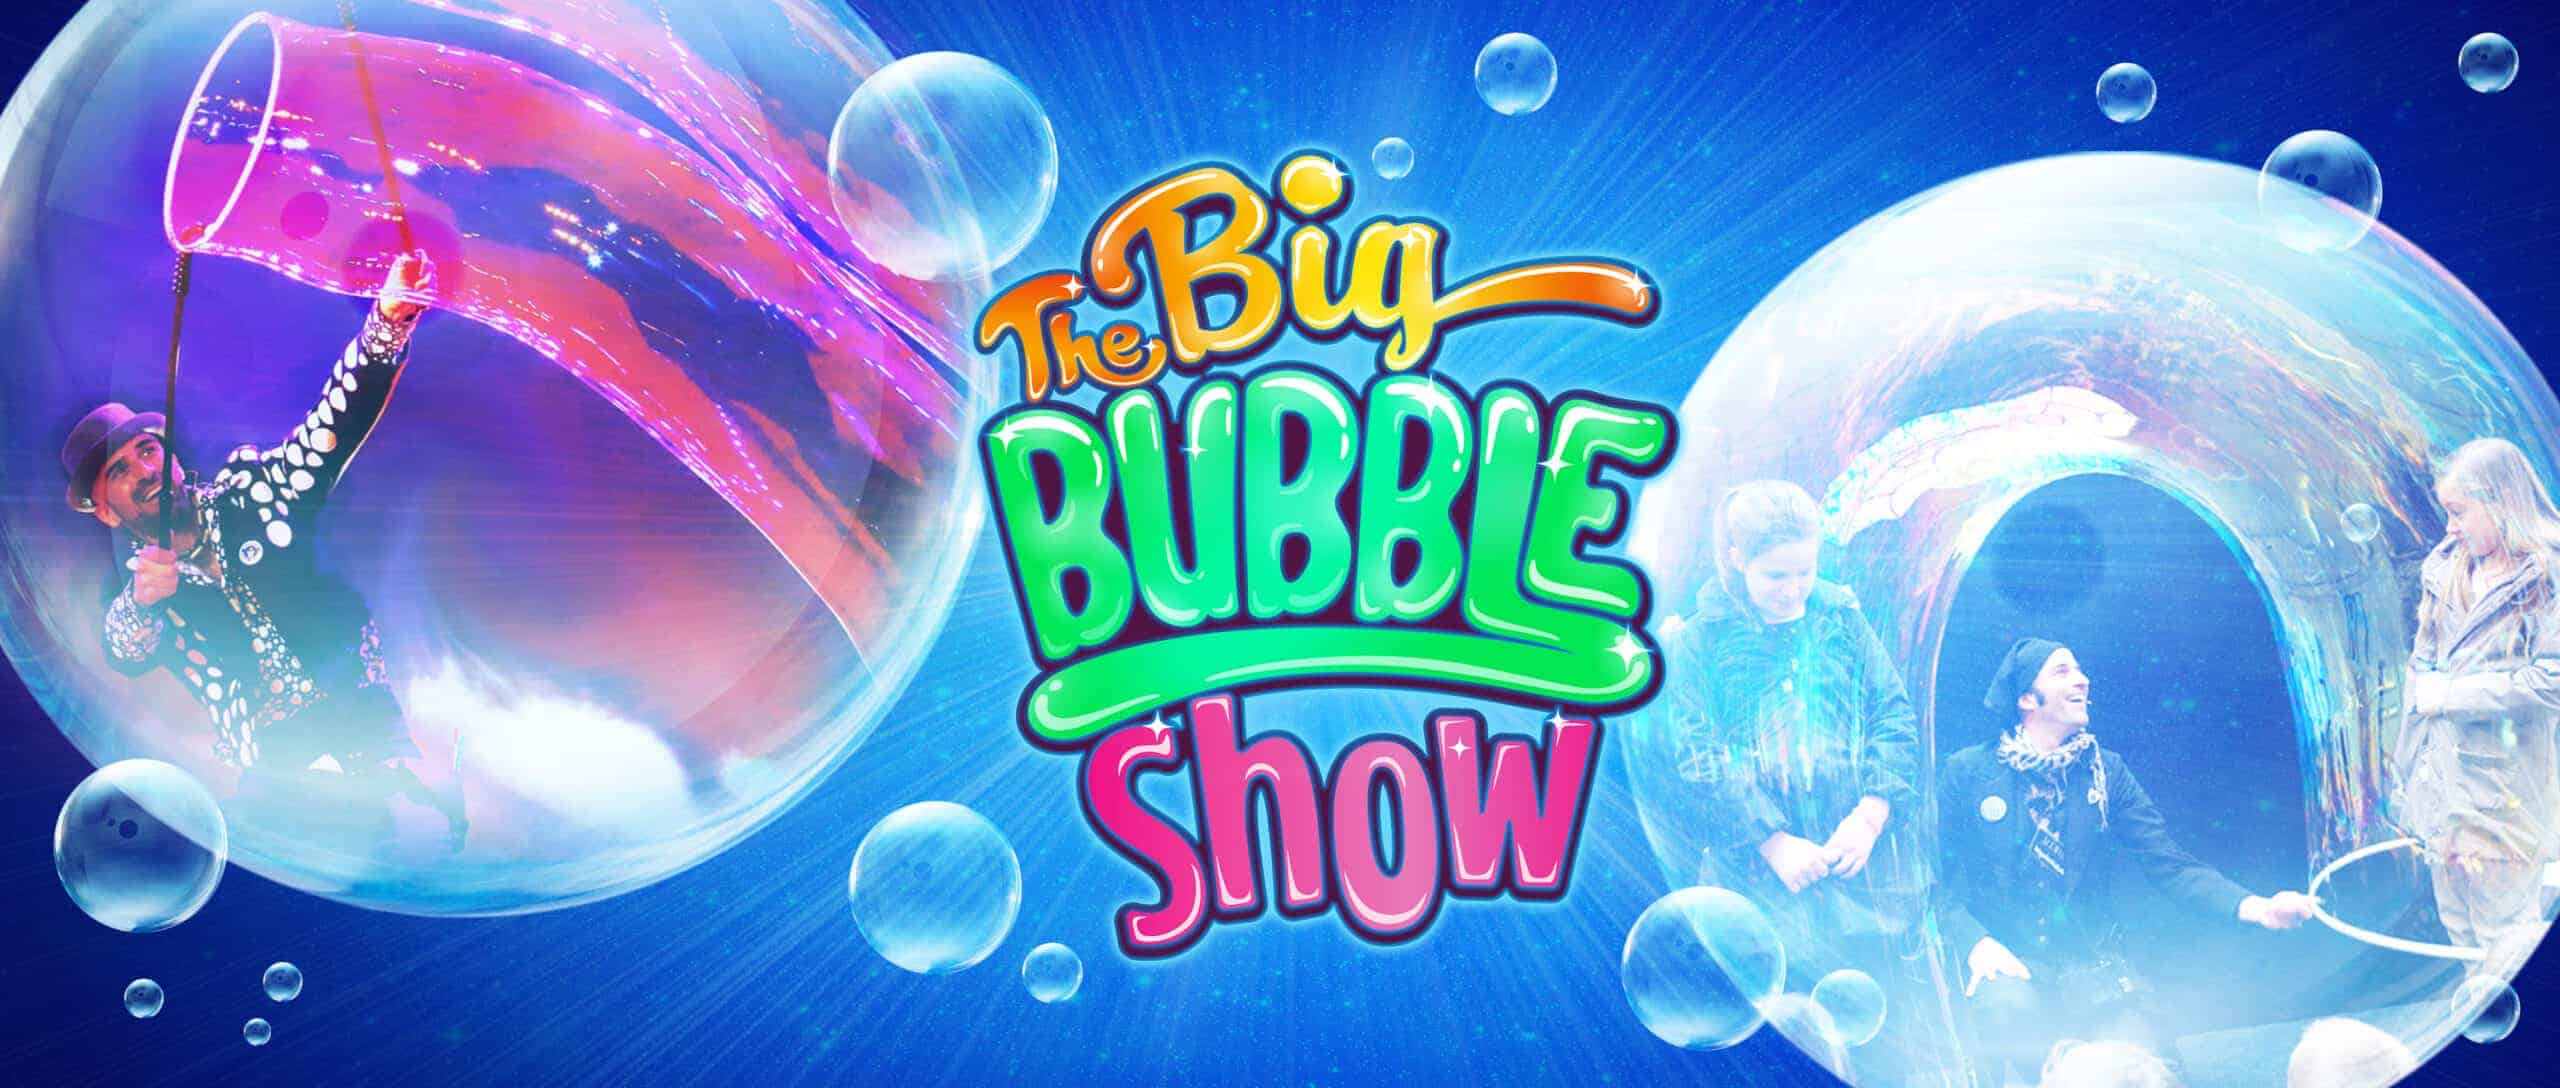 Bubble show, Bubble show nasıl yapılır, Bubble sıvısı nasıl yapılır, Bubble show malzemeleri